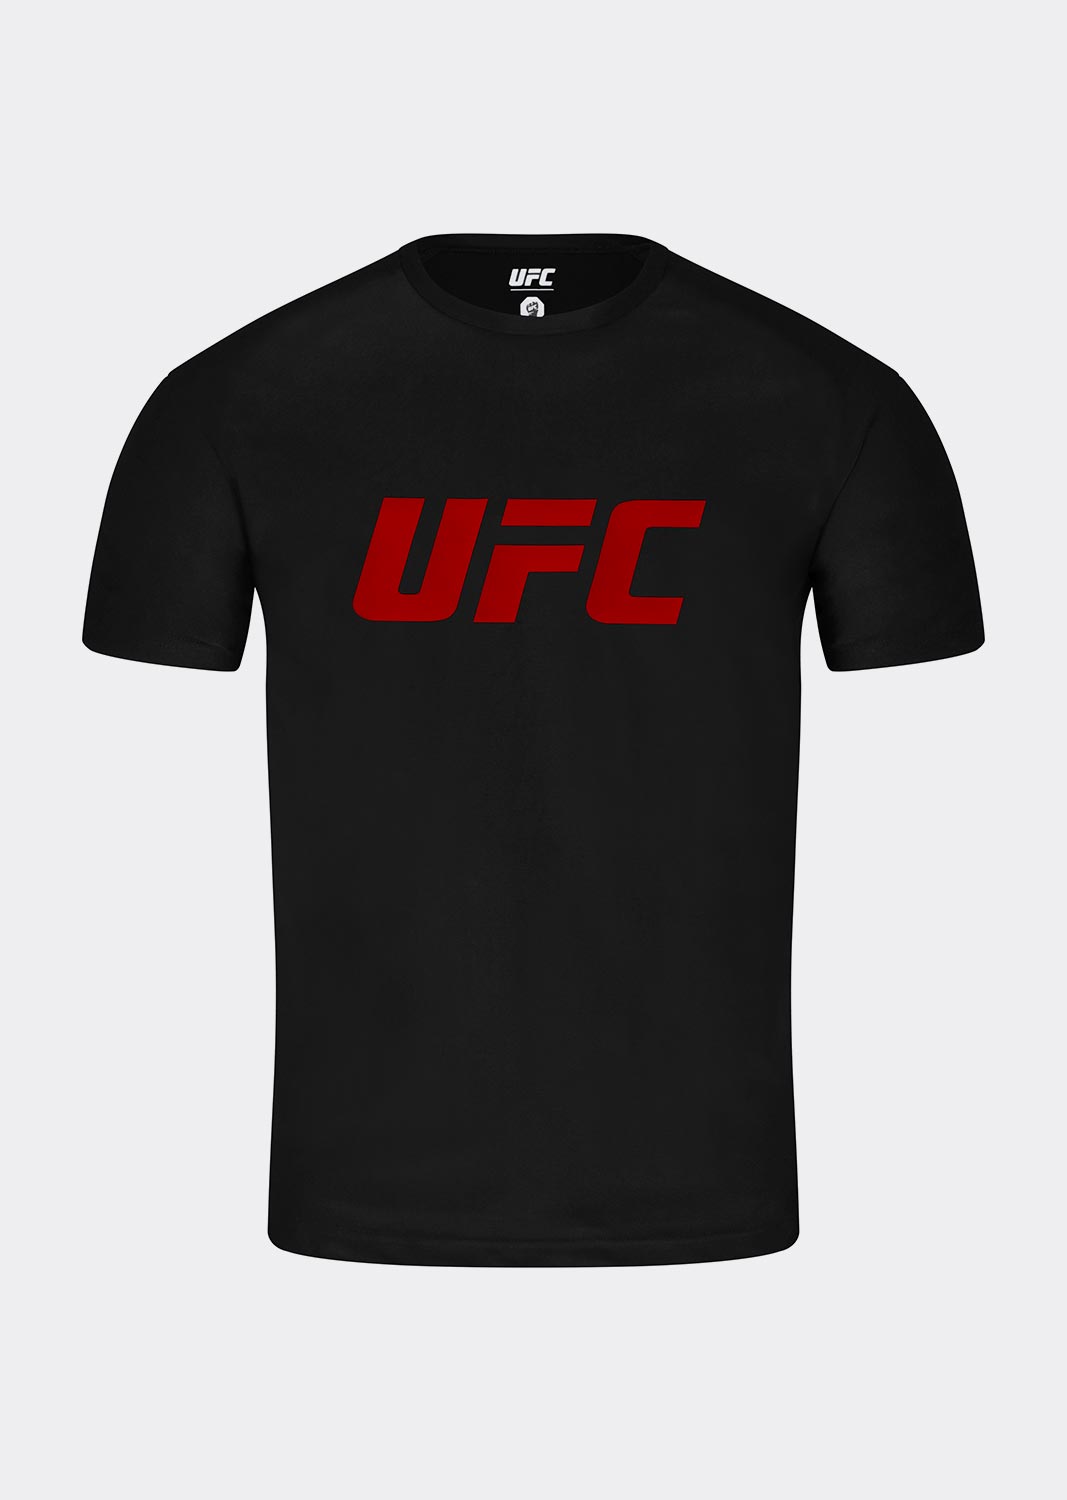 UFC 텐션 빅로고 머슬핏 반팔 티셔츠 블랙 U4SSU3319BK